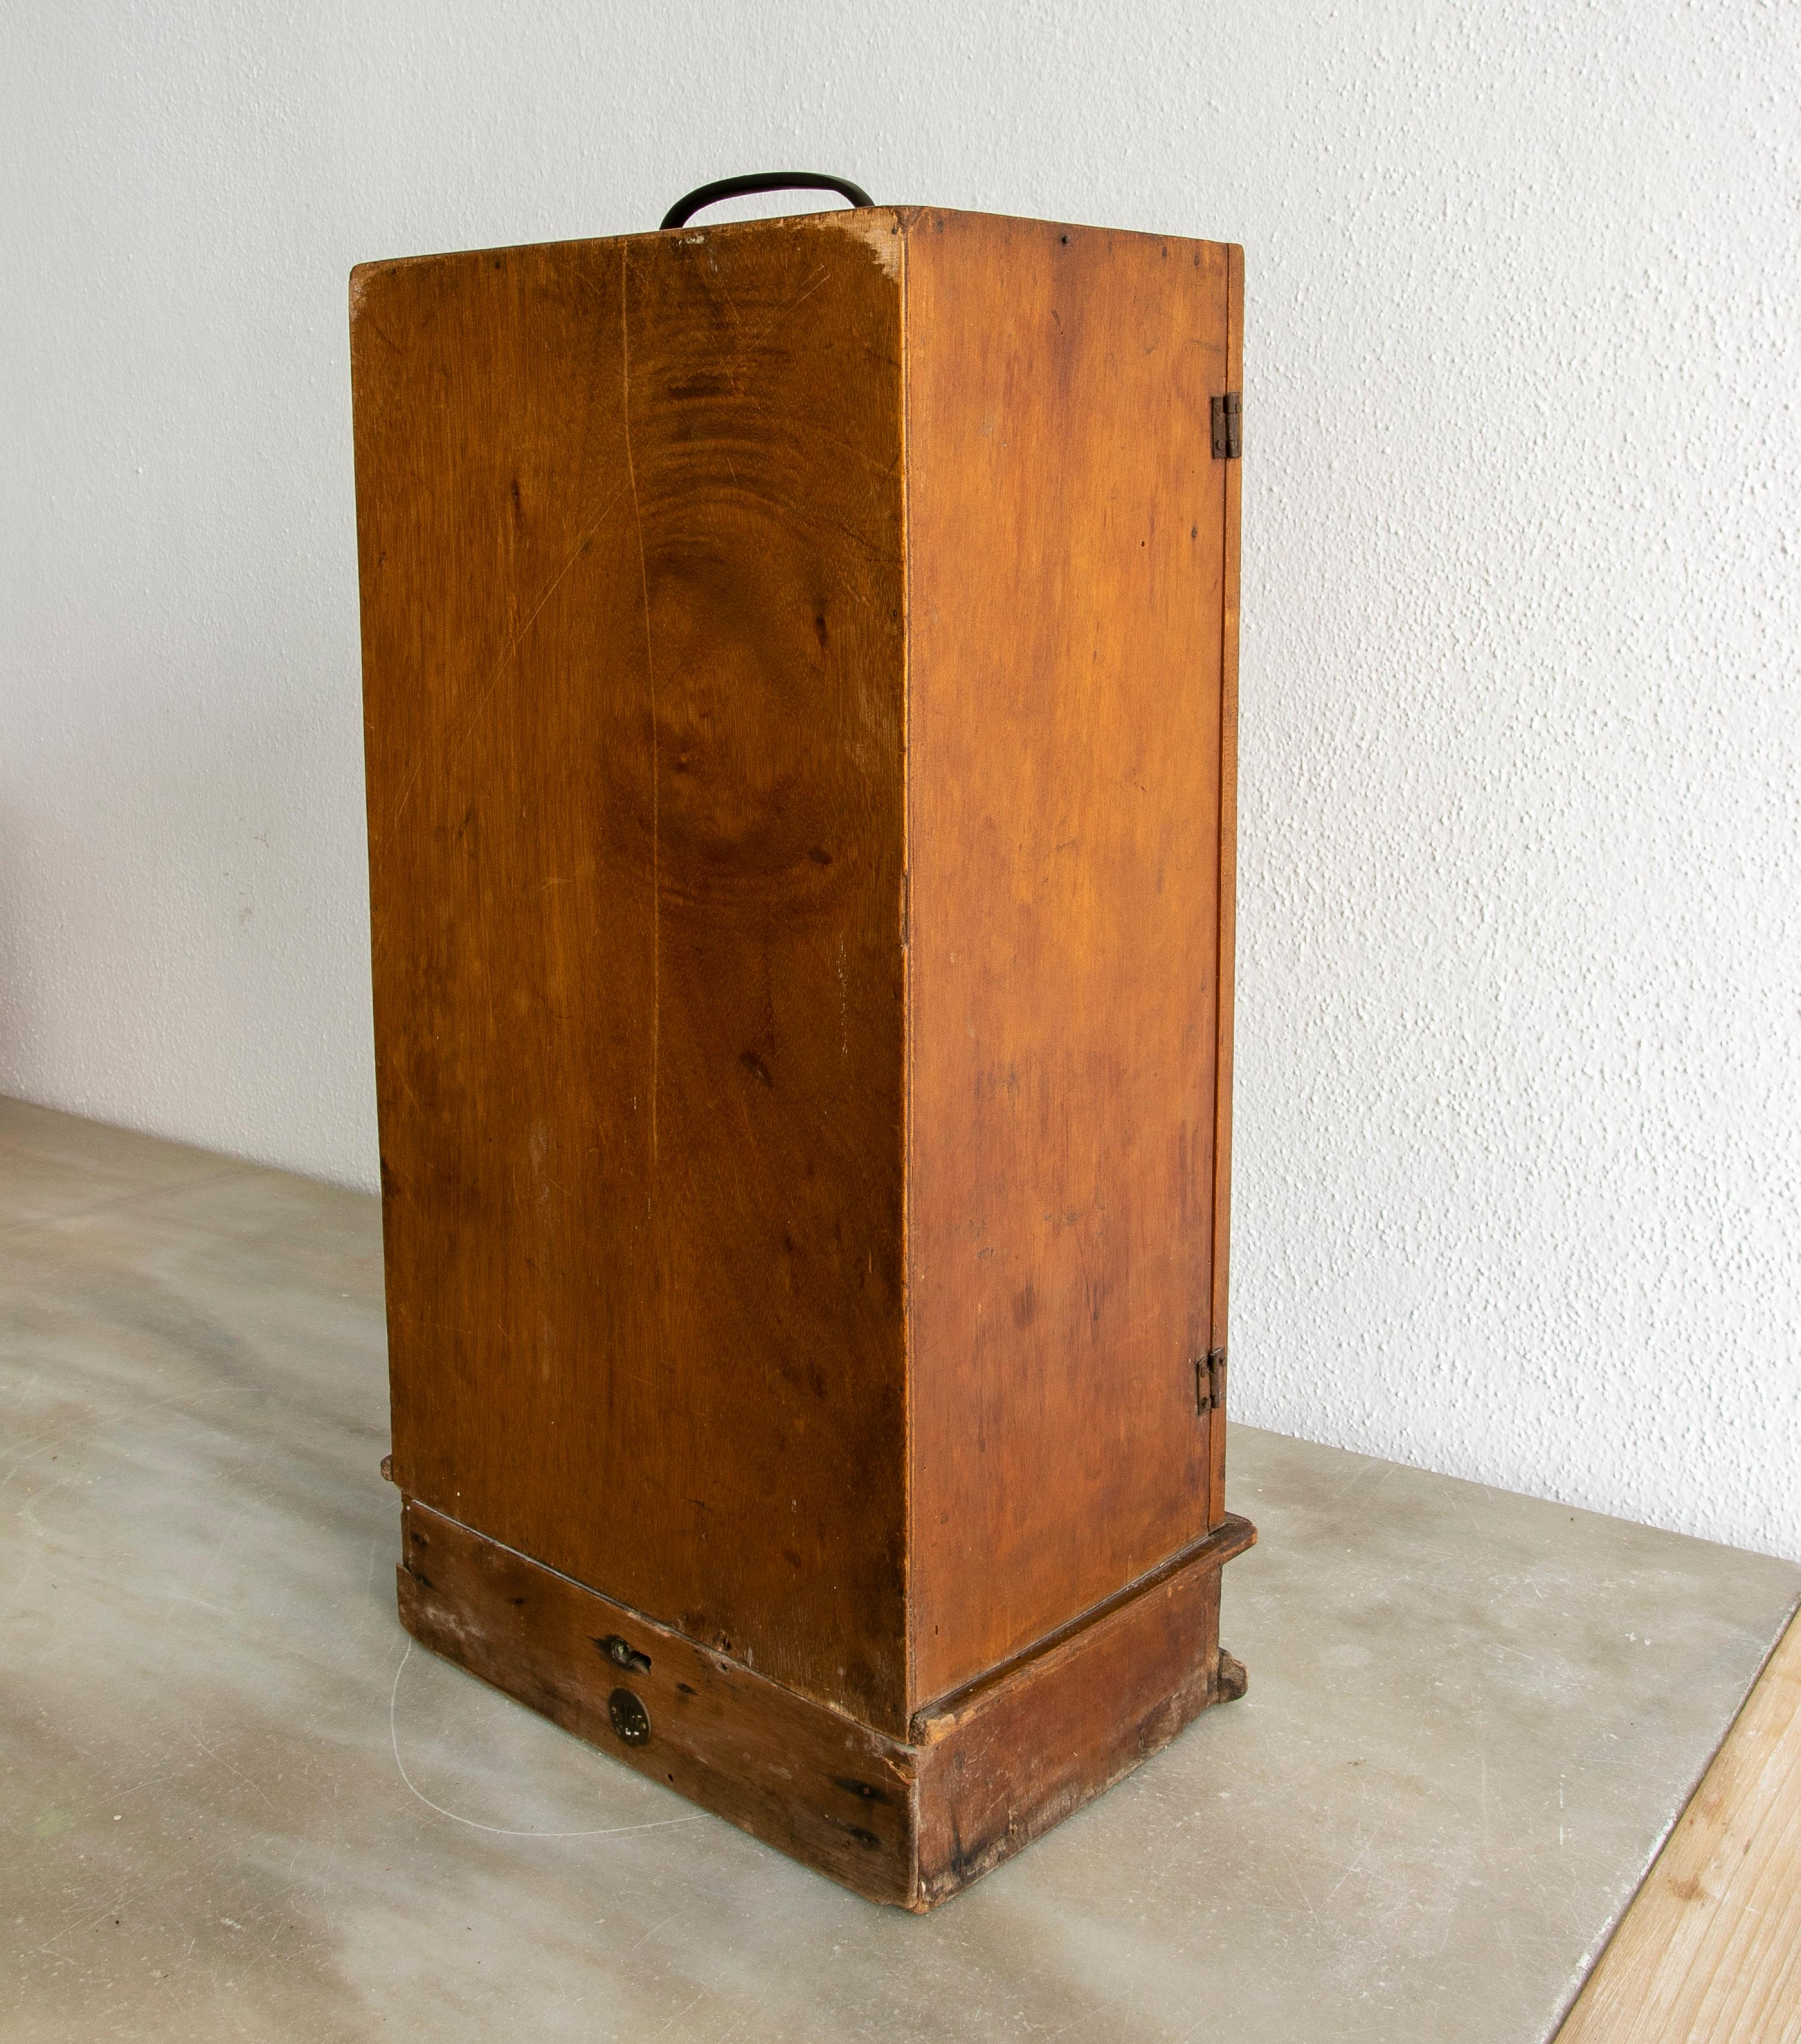  Vierge Fuencisla en terre cuite espagnole de la fin du XIXe siècle dans sa boîte en bois 1